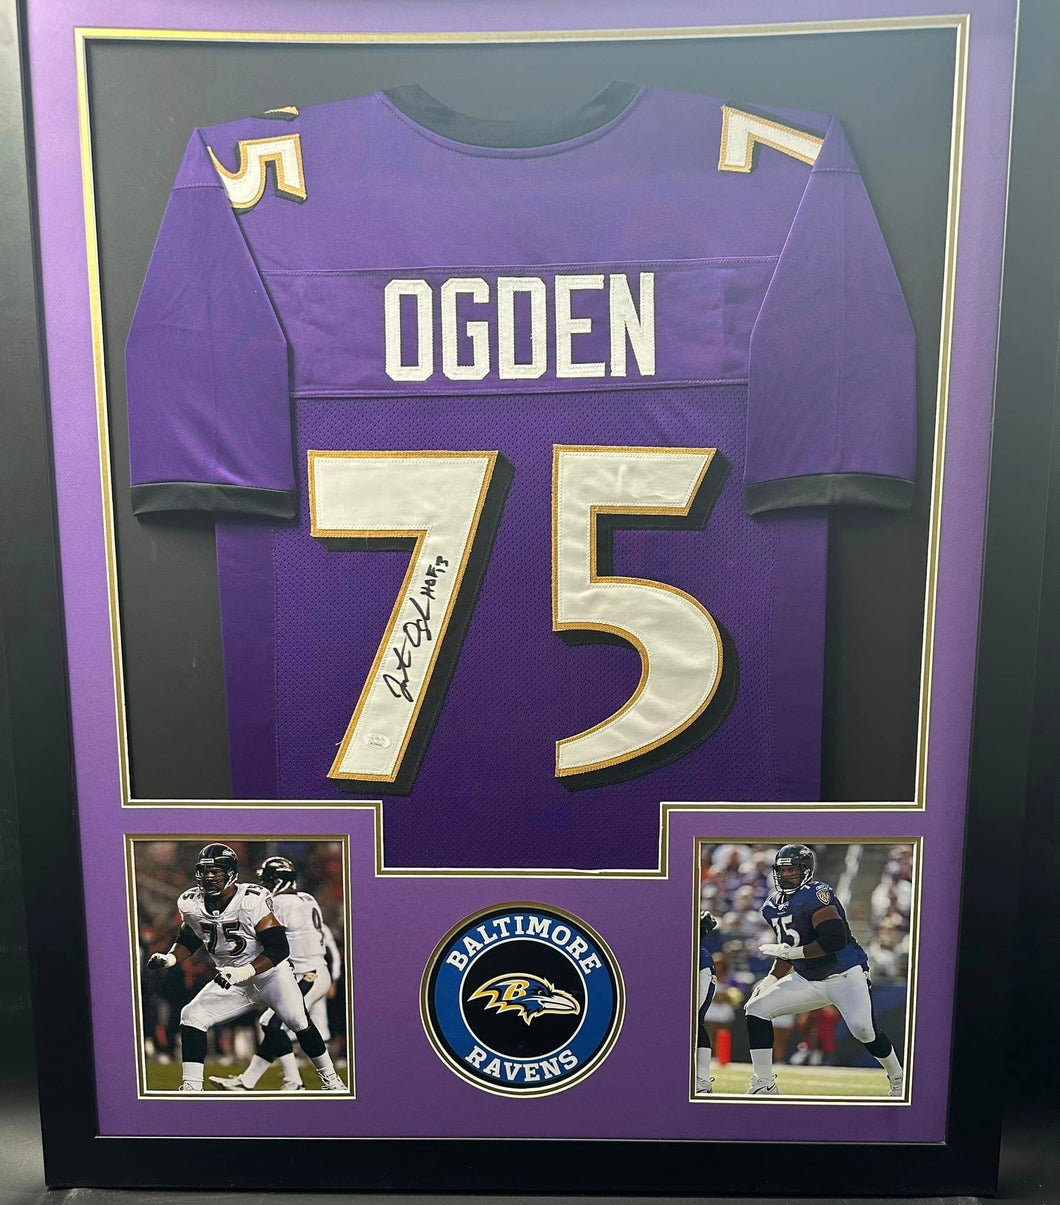 Baltimore Ravens Jonathan Ogden Signed Jersey with HOF 13 Inscription Framed & Matted with JSA COA